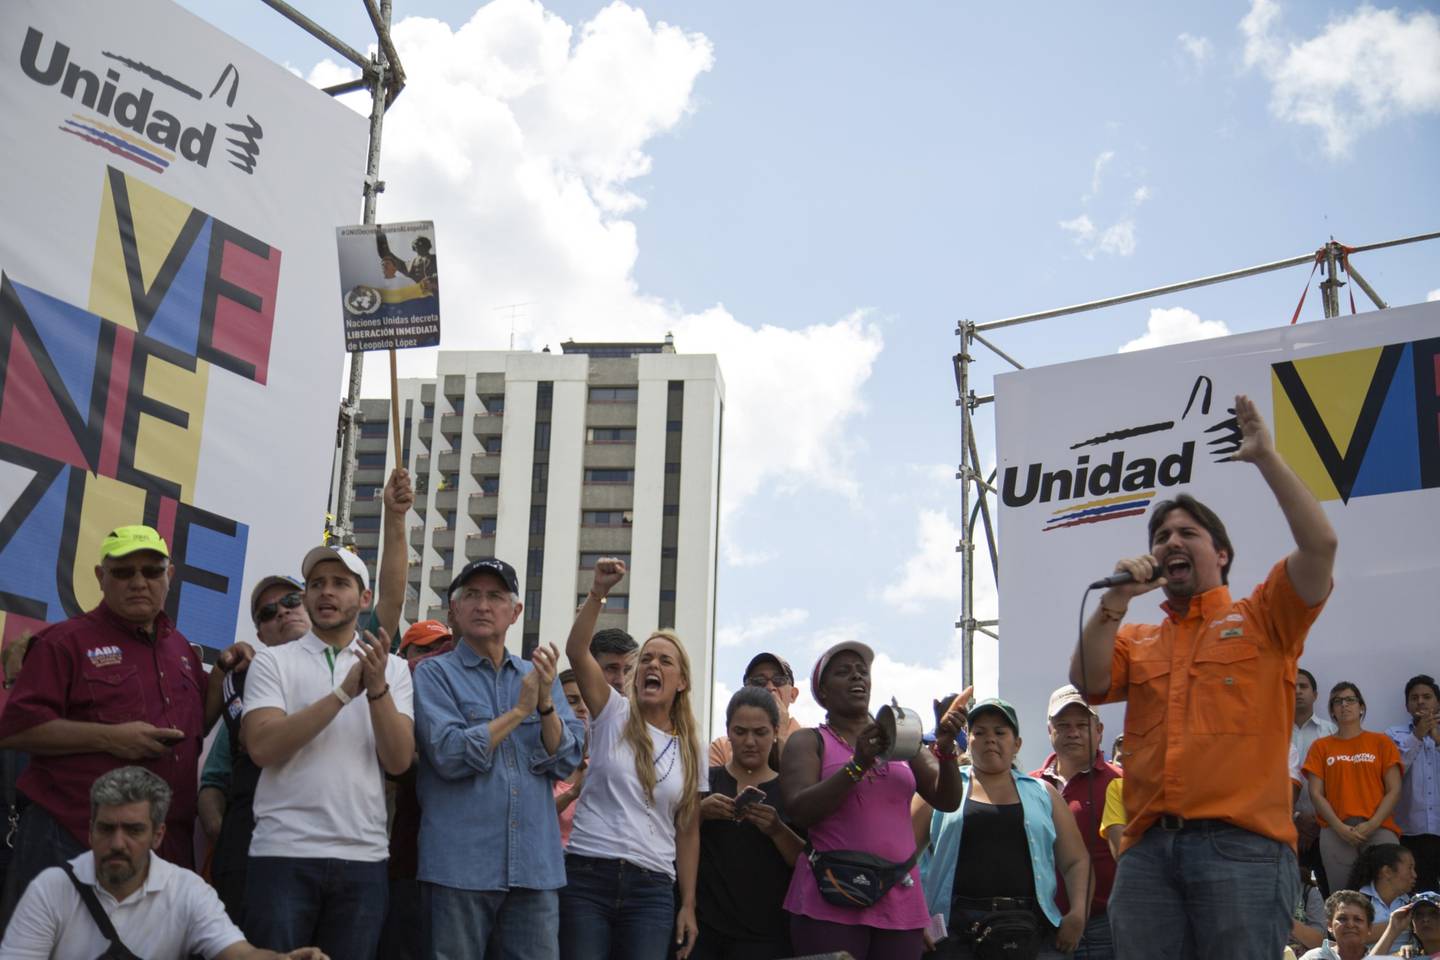 Freddy Guevara habla en un escenario durante una protesta en Caracas, Venezuela, el sábado 24 de enero de 2015. Partidarios de la oposición política venezolana marcharon ese día para protestar por la escasez de productos y exigir un cambio de gobierno.dfd